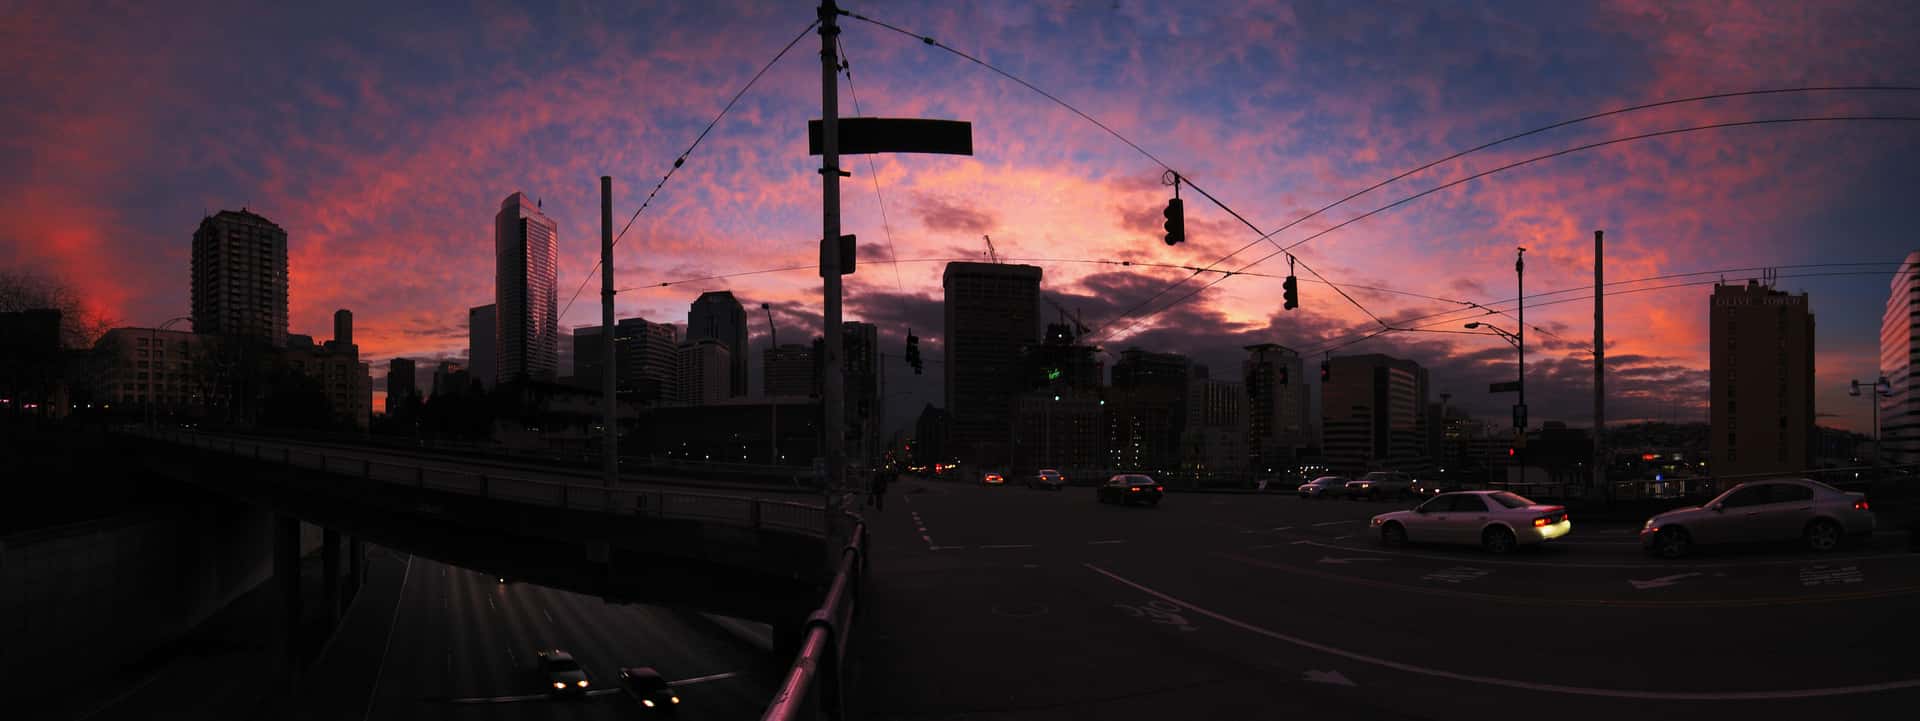 sunset over Seattle’s Pine Street overpass